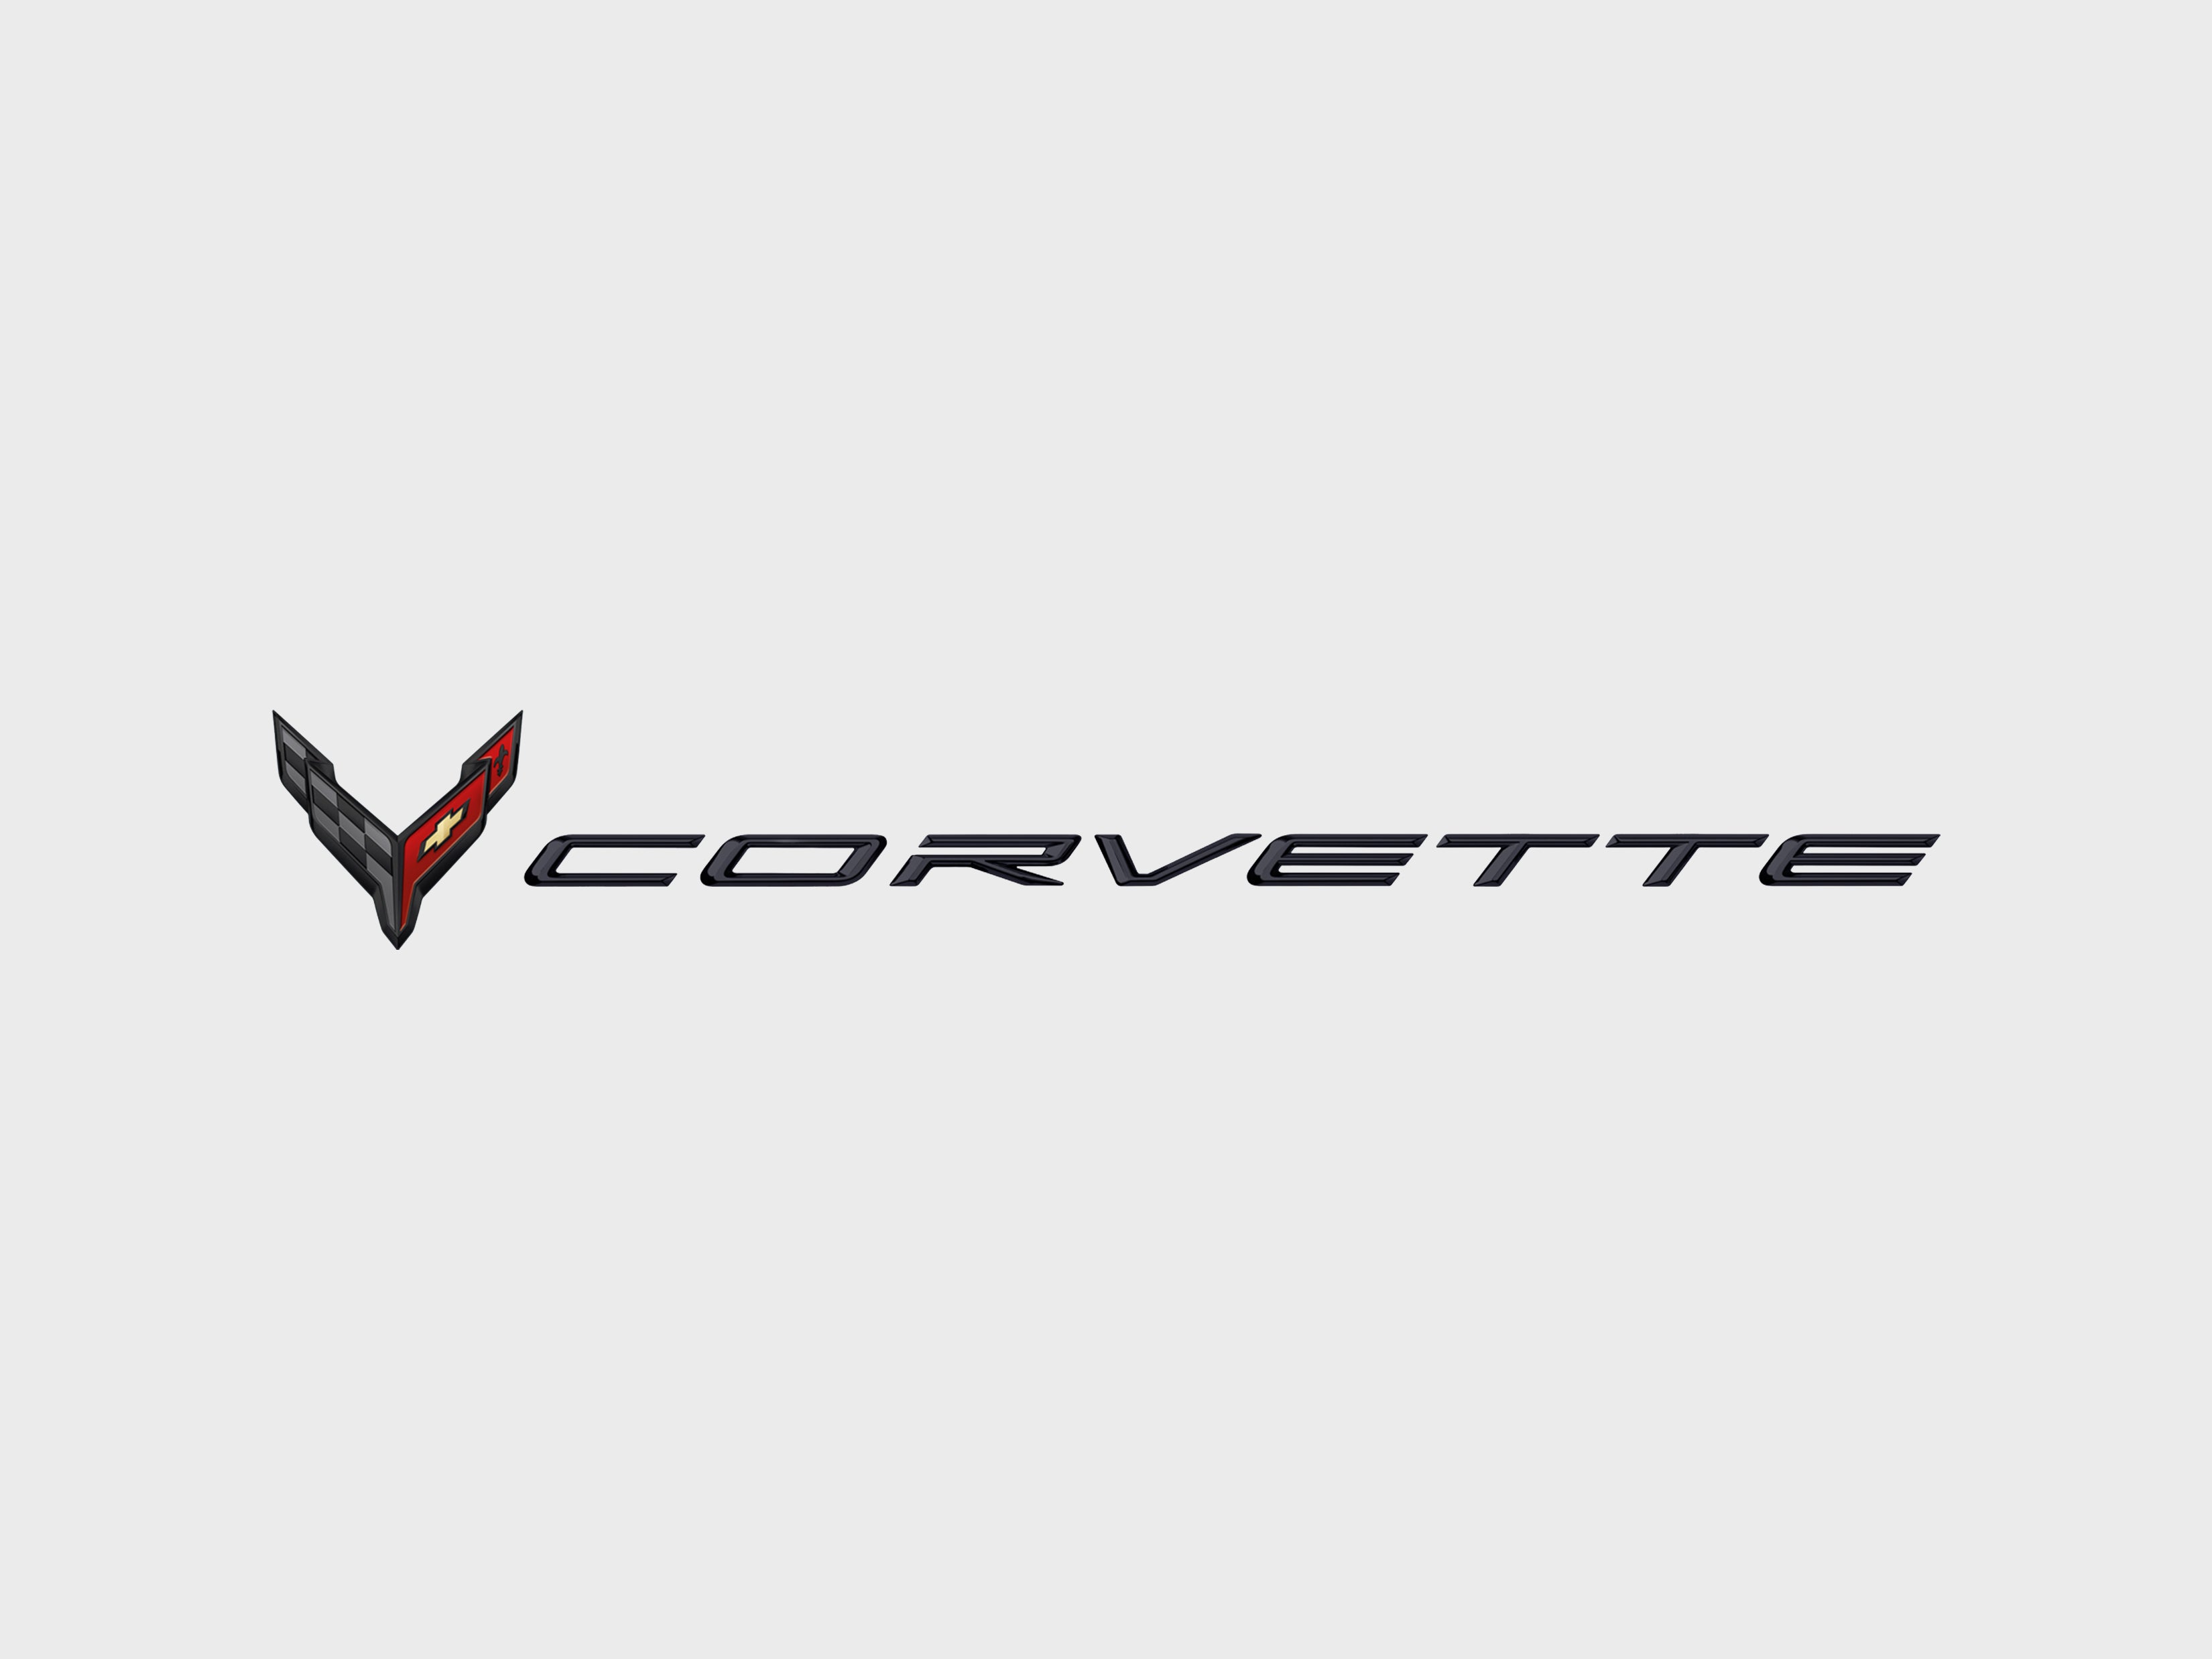 Corvette – GM Company Store